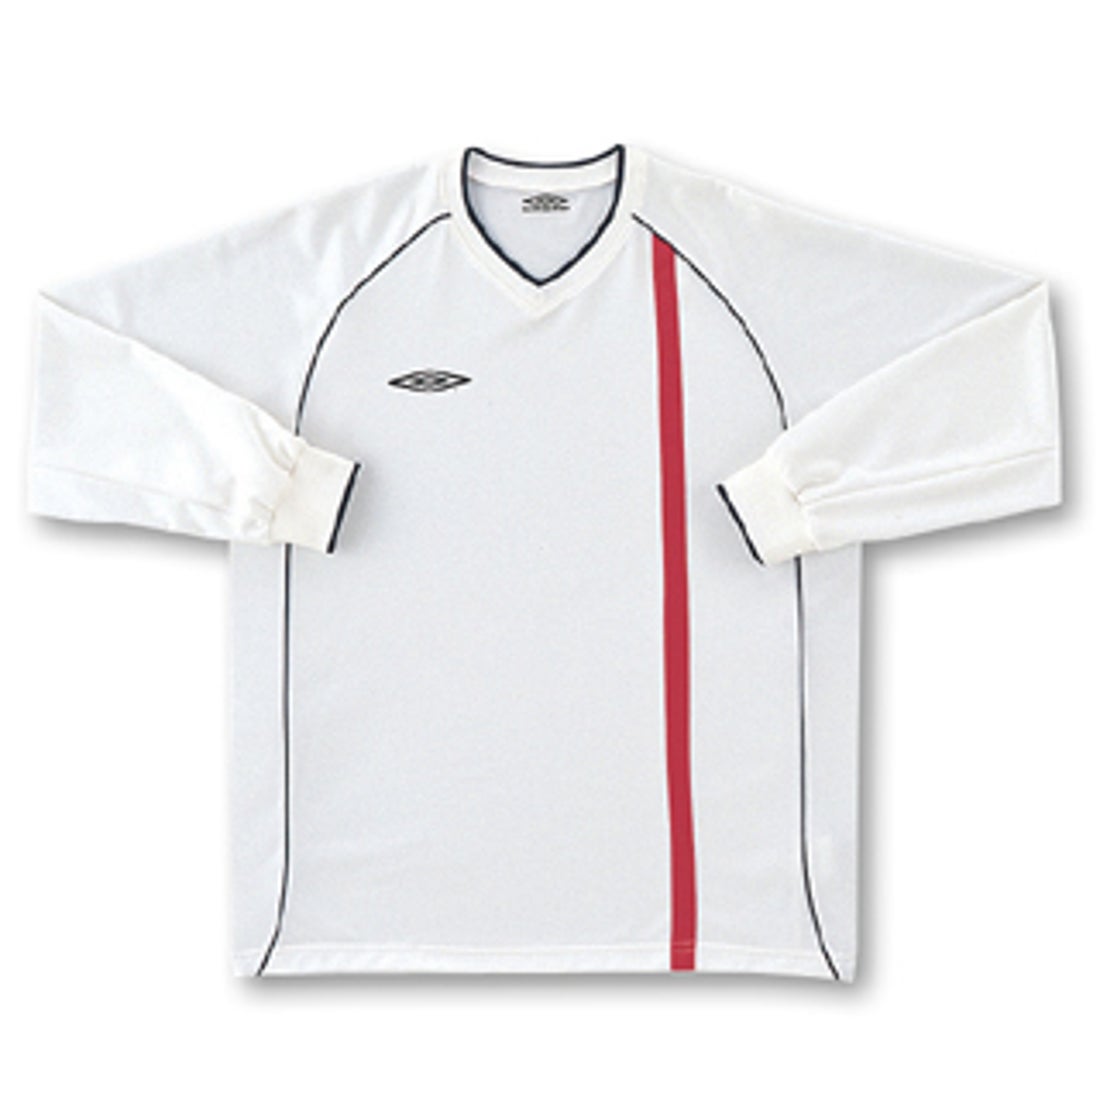 イングランド代表 01/03ホーム 長袖ゲームシャツ モデル(ホワイト)